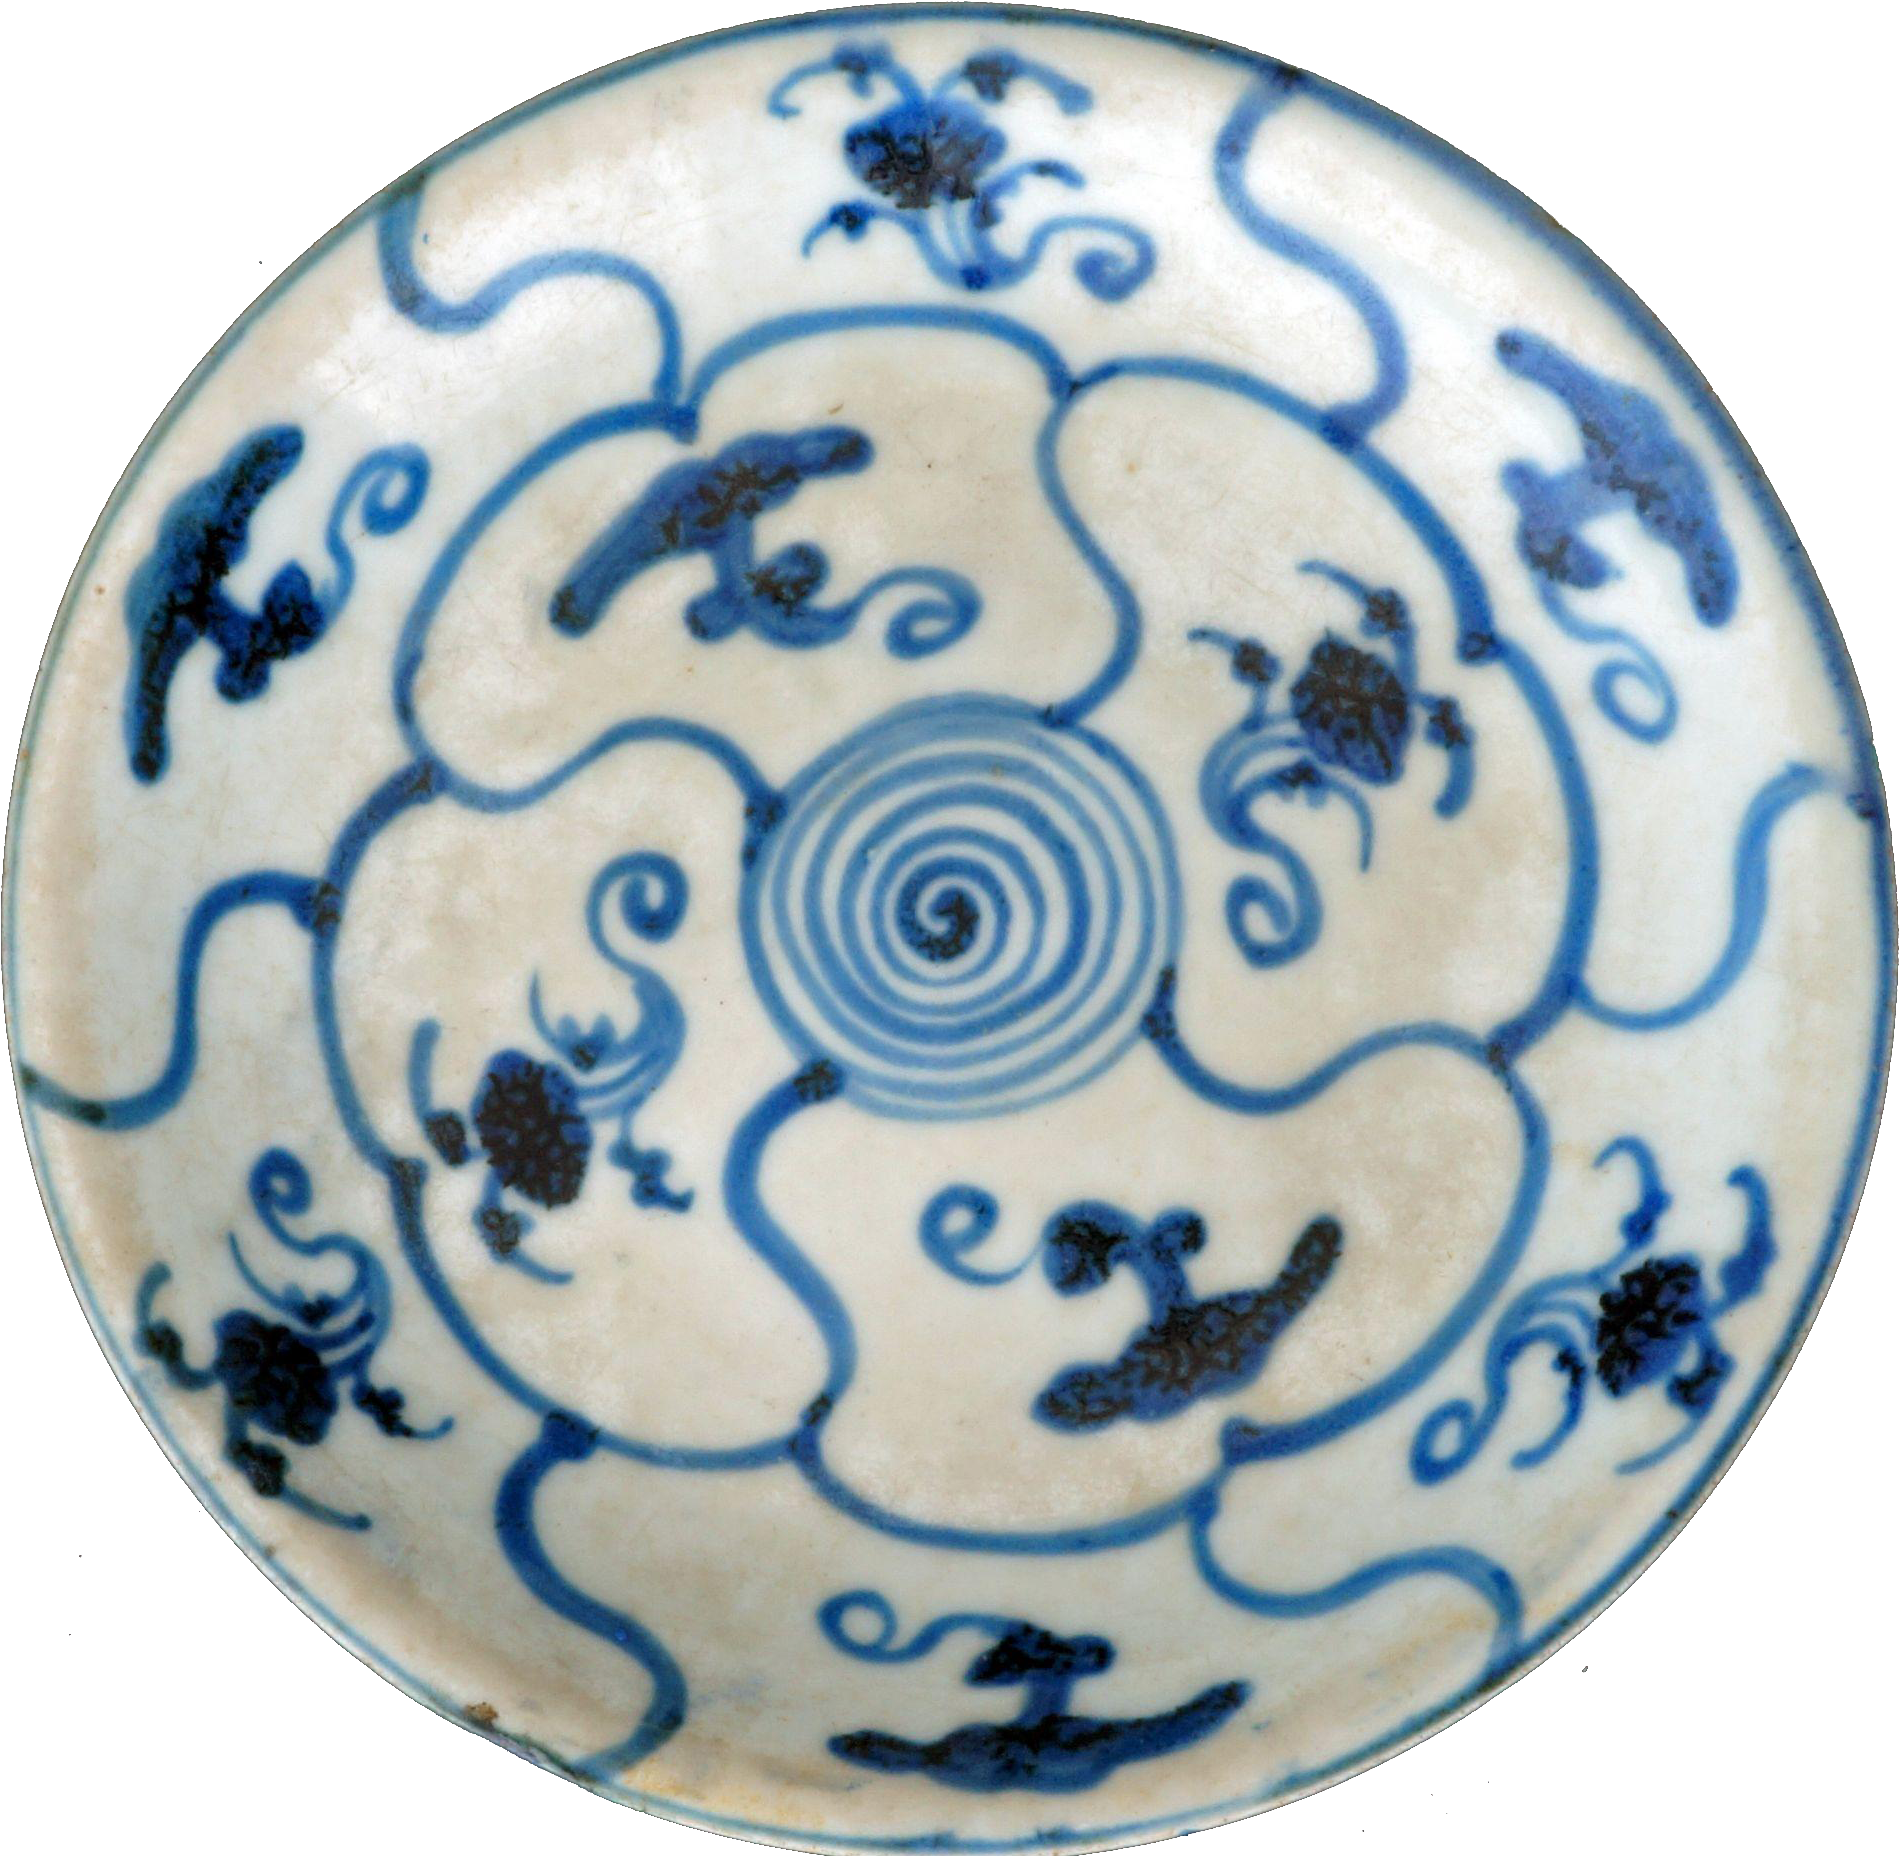 Porcelaine de la dynastie Ming de Chine, assiettes en porcelaine bleue et blanche